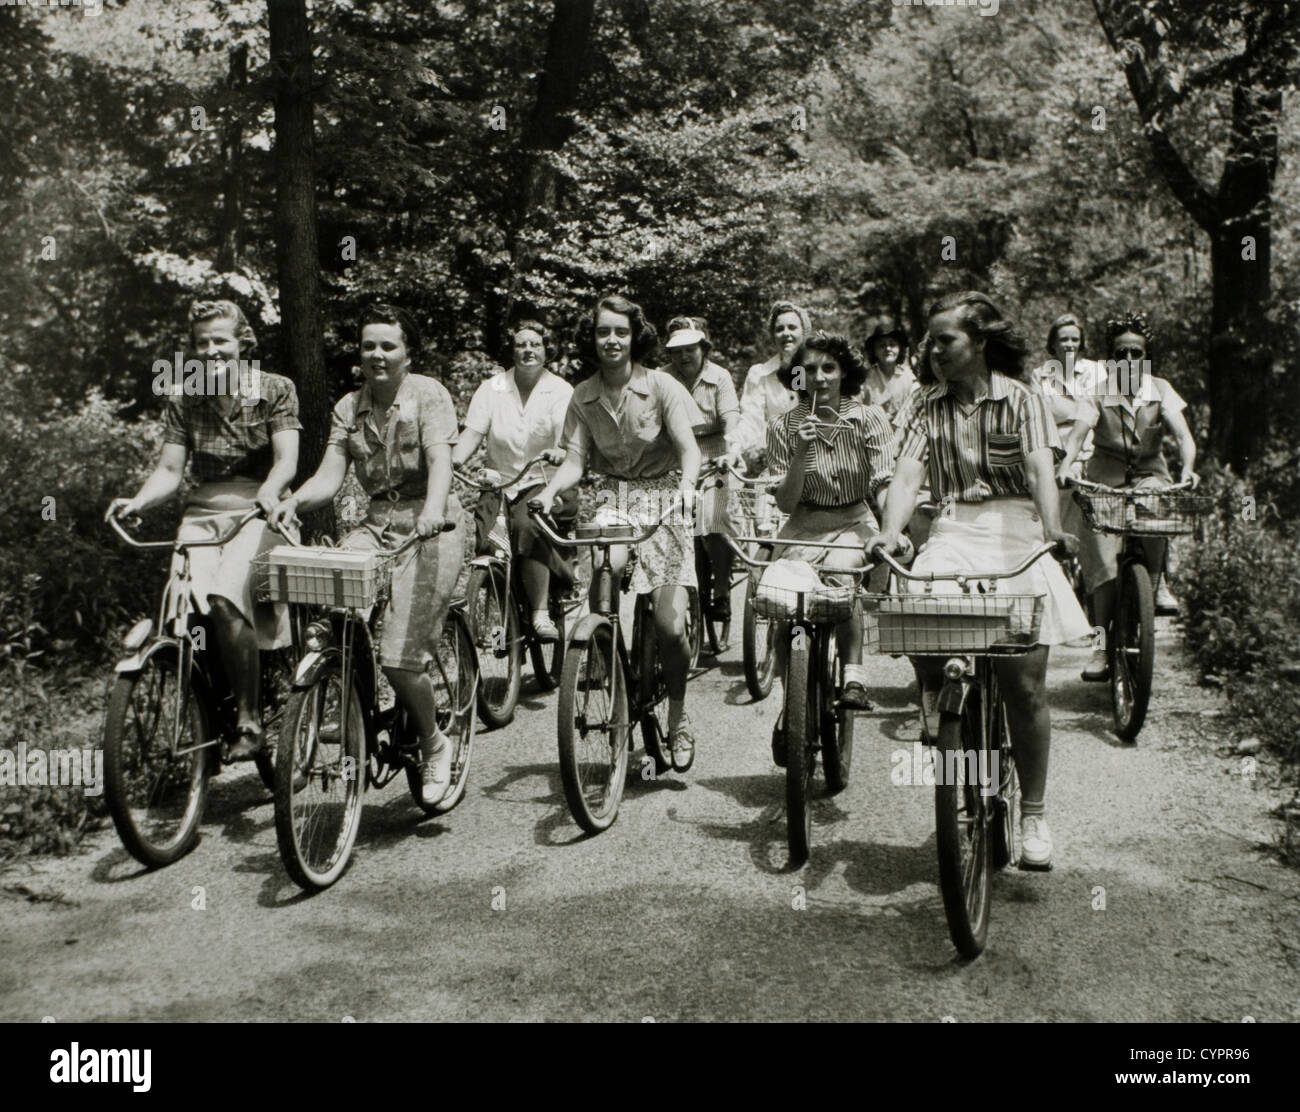 Groupe de femmes cyclistes sur route de terre, USA, 1950 Banque D'Images